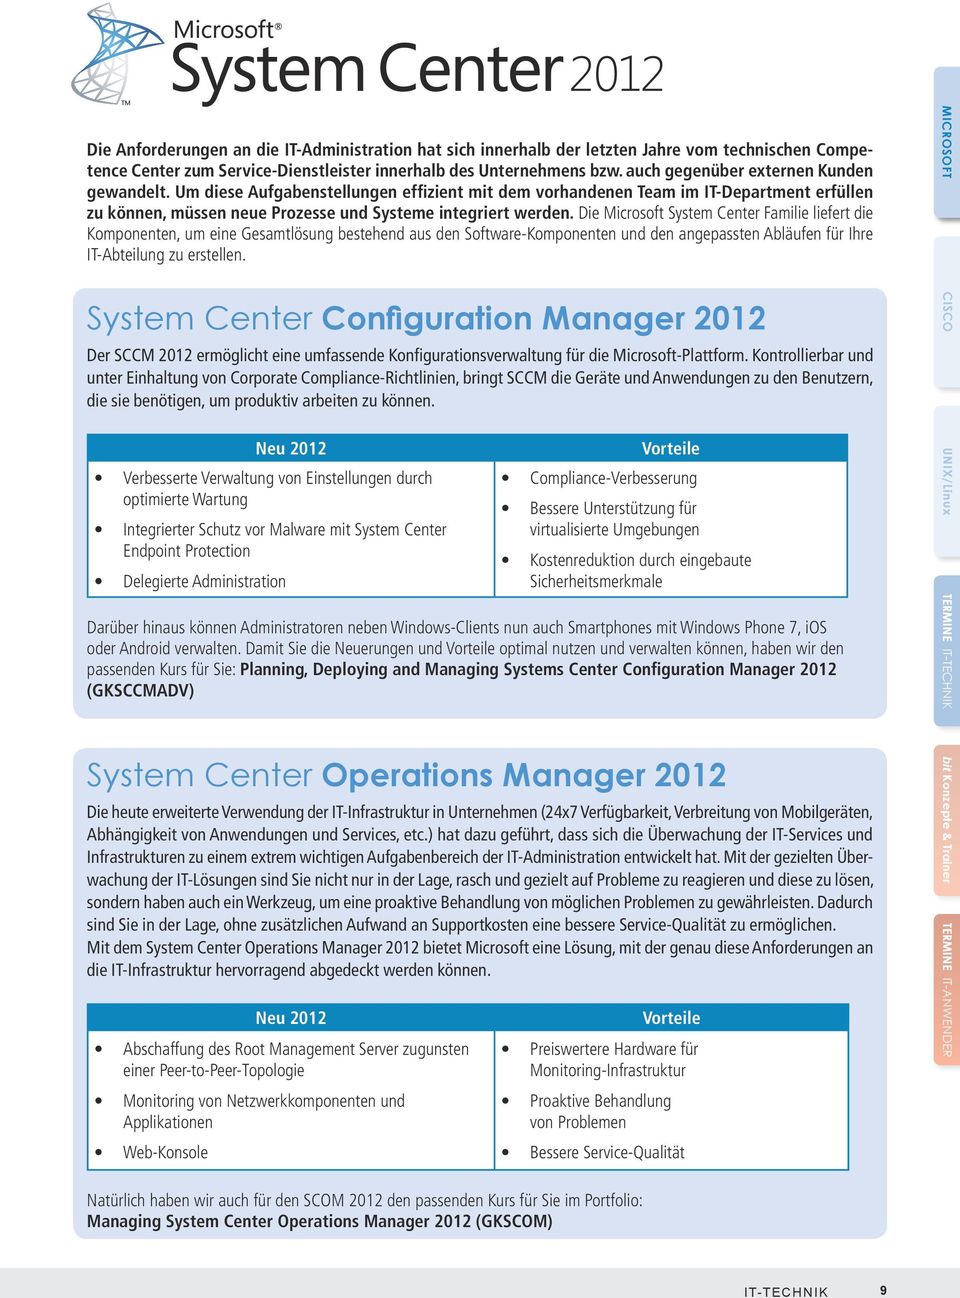 Die Microsoft System Center Familie liefert die Komponenten, um eine Gesamtlösung bestehend aus den Software-Komponenten und den angepassten Abläufen für Ihre IT-Abteilung zu erstellen.